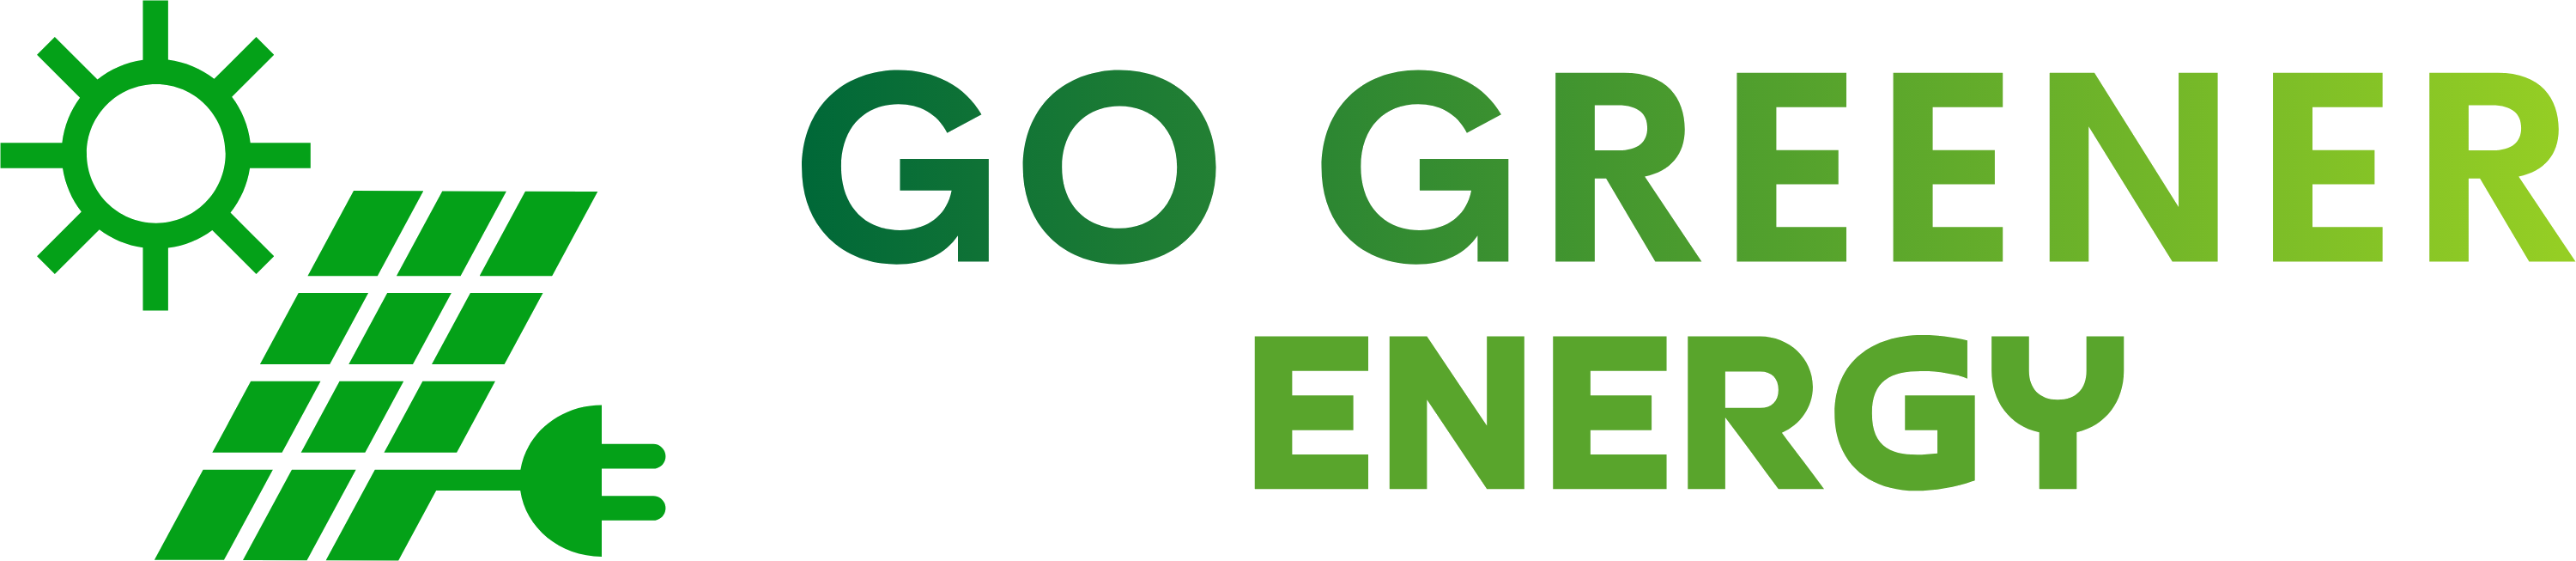 Go Greener Energy Ltd